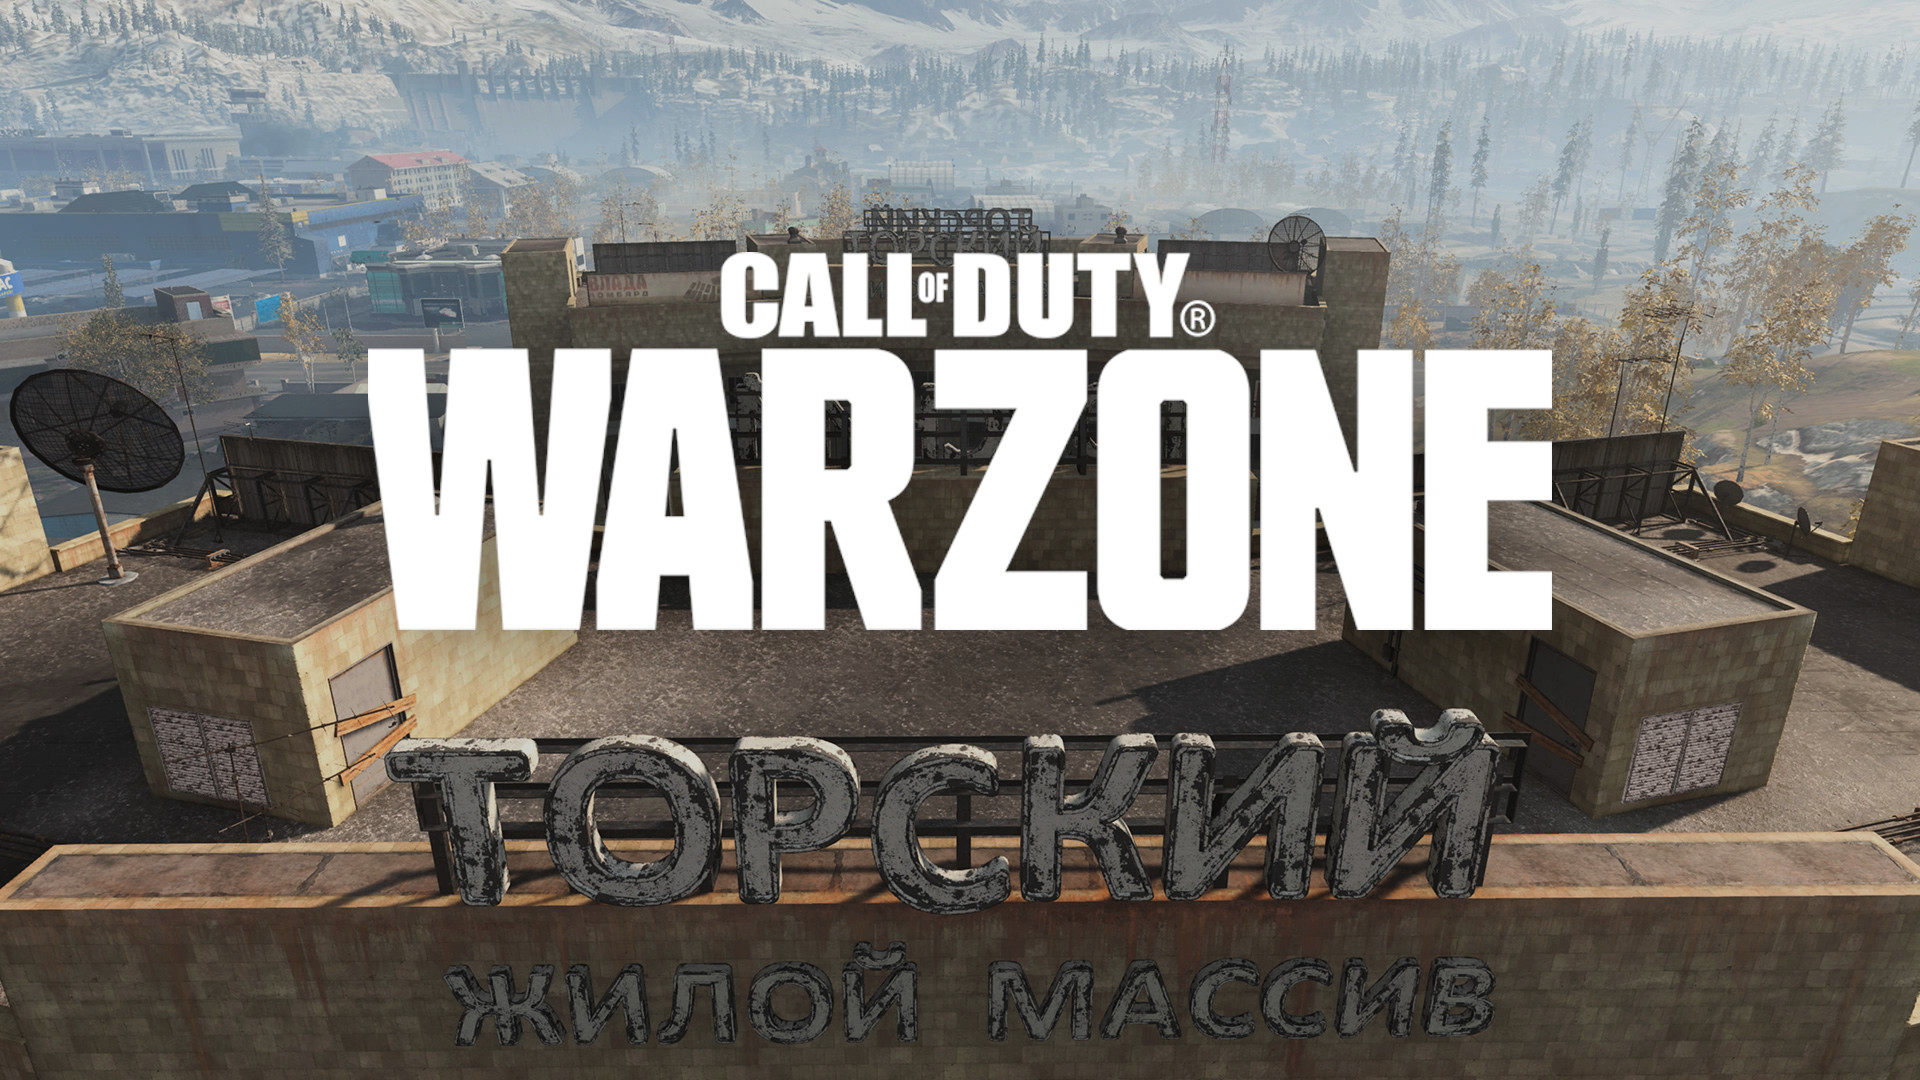 Persyaratan Slang Call of Duty Warzone